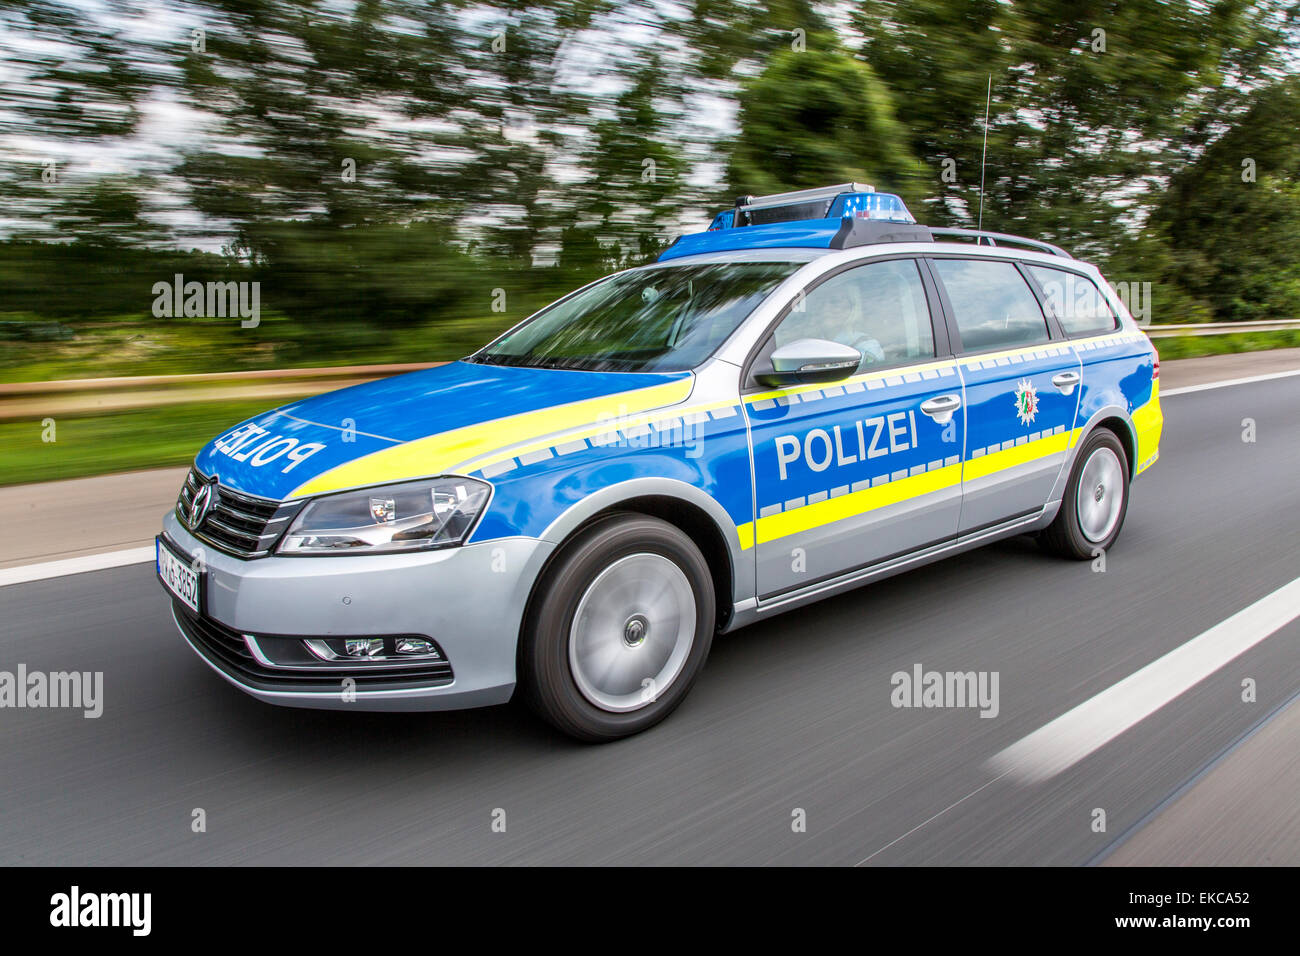 Autobahn Police